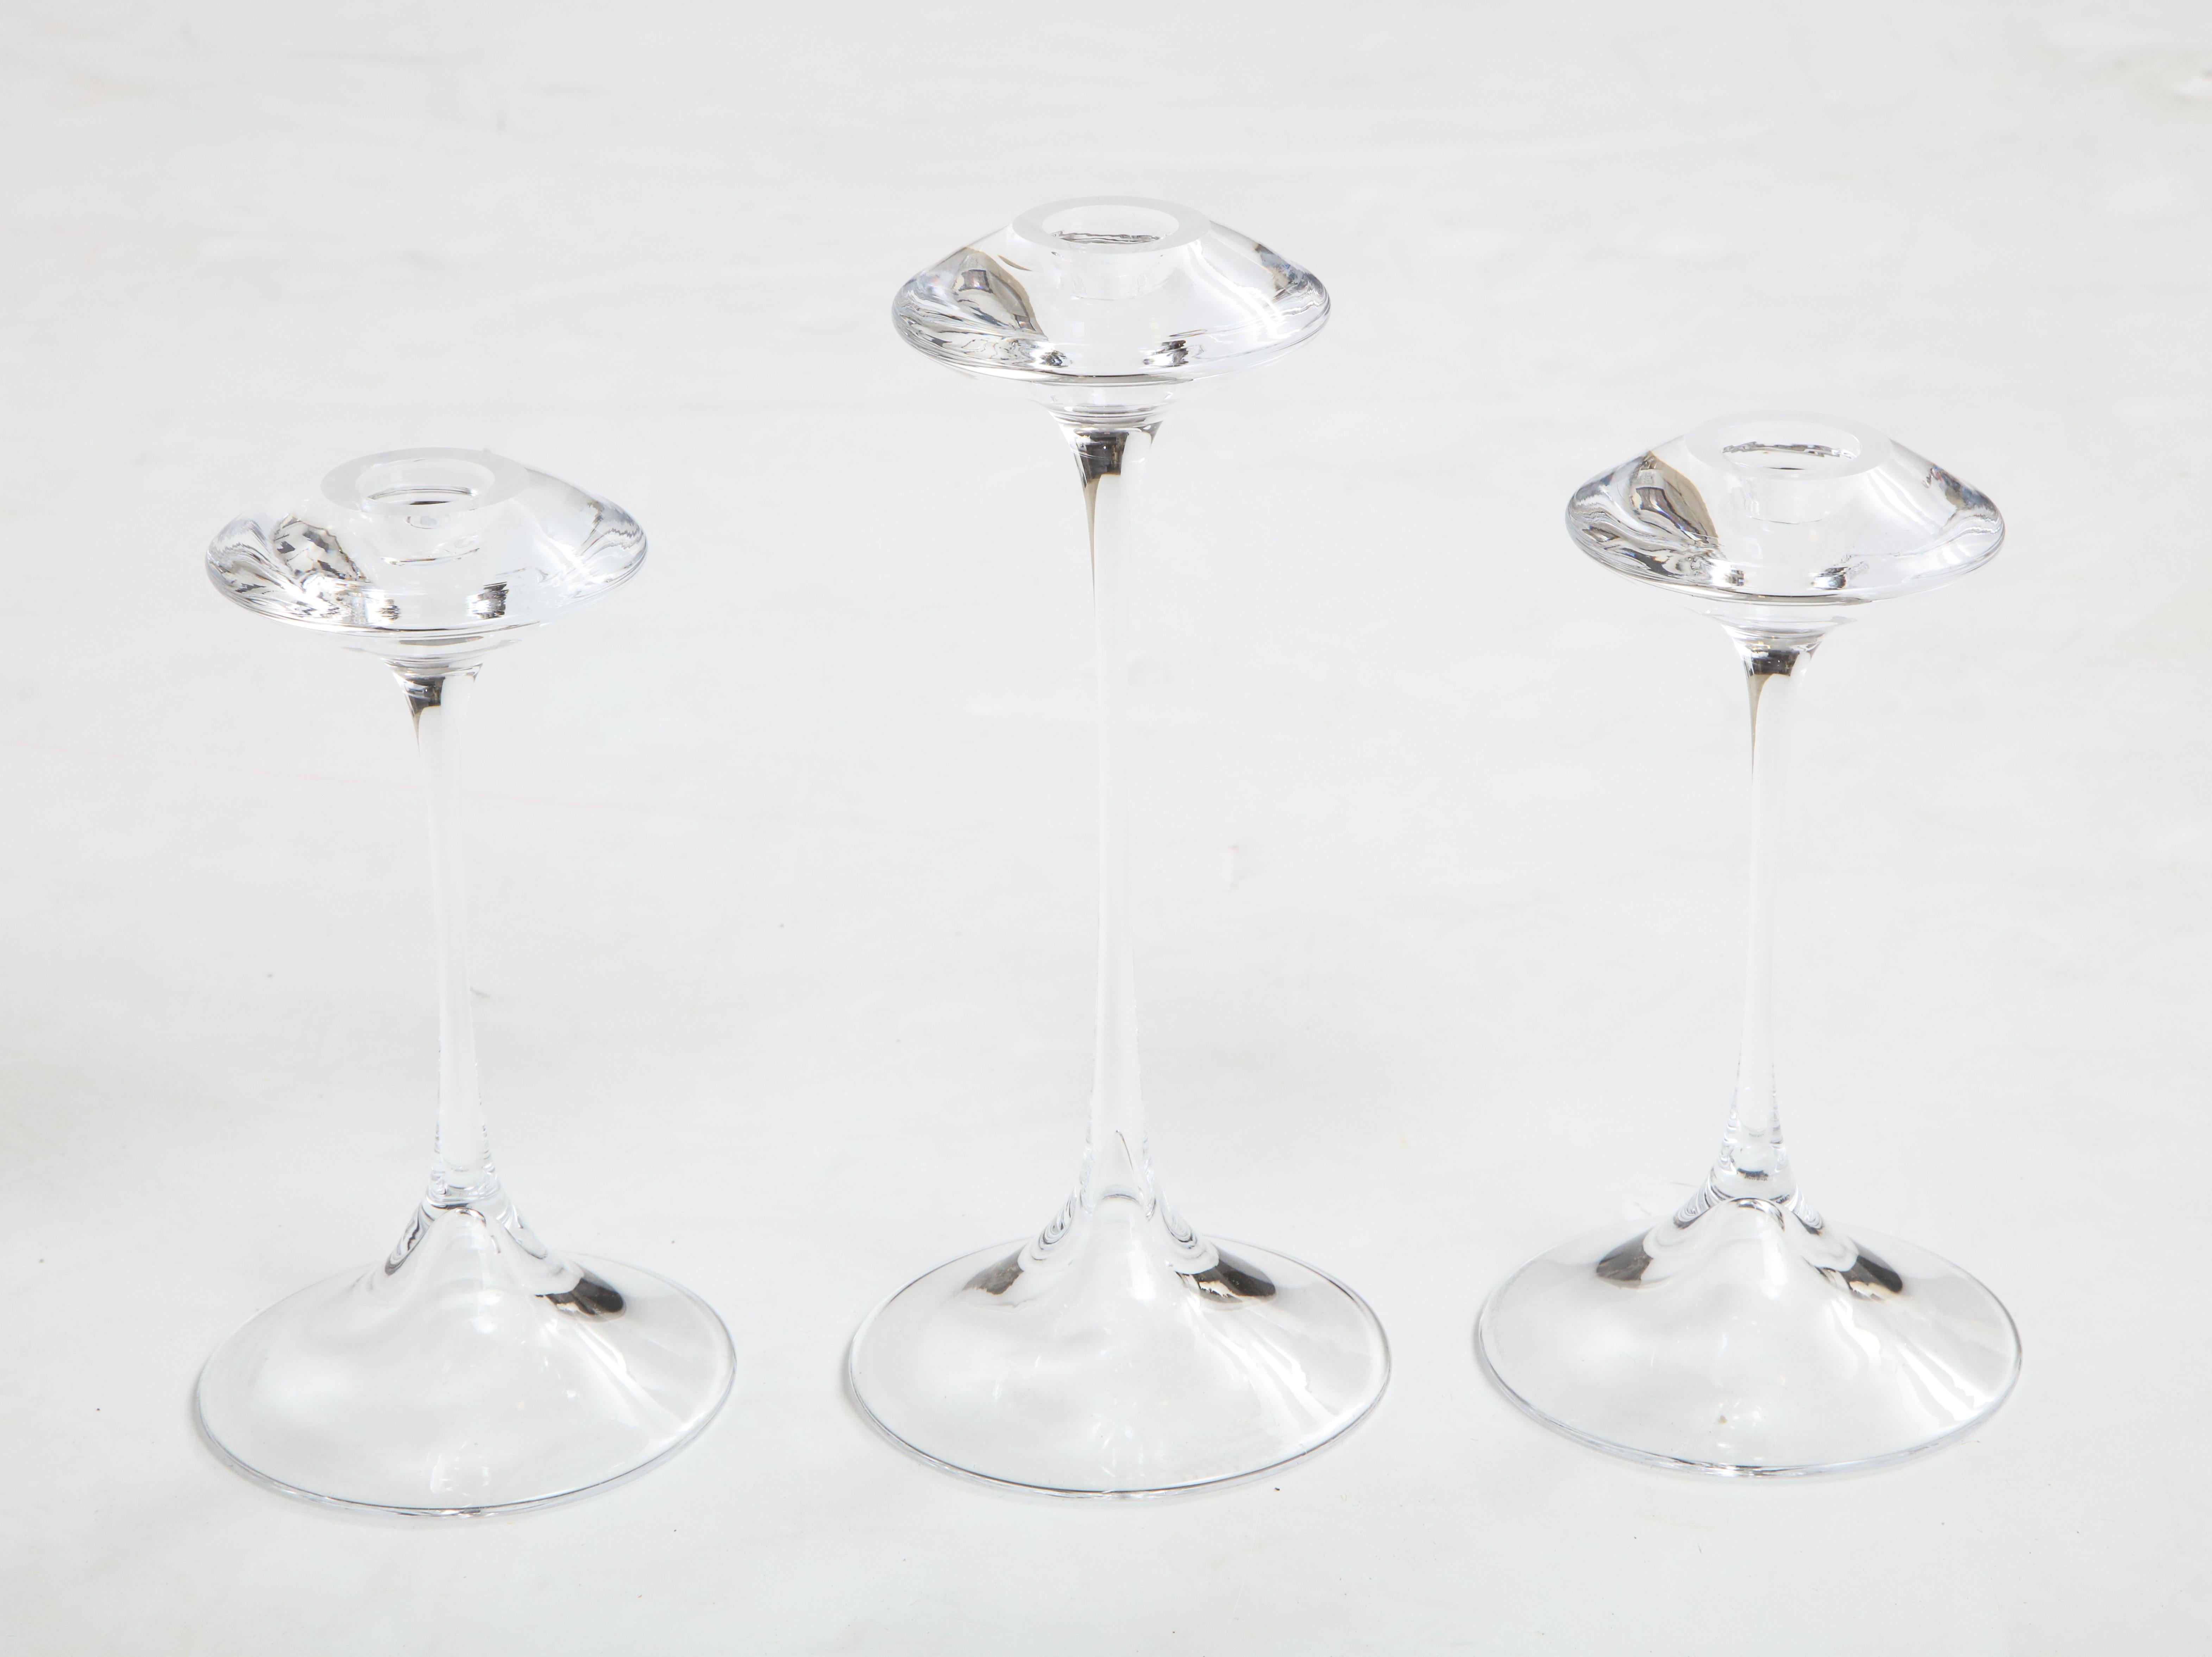 Superbe ensemble de 3 chandeliers en verre Kjell Engman pour Kosta Boda.

Les deux plus petits chandeliers ont une hauteur de 7''.